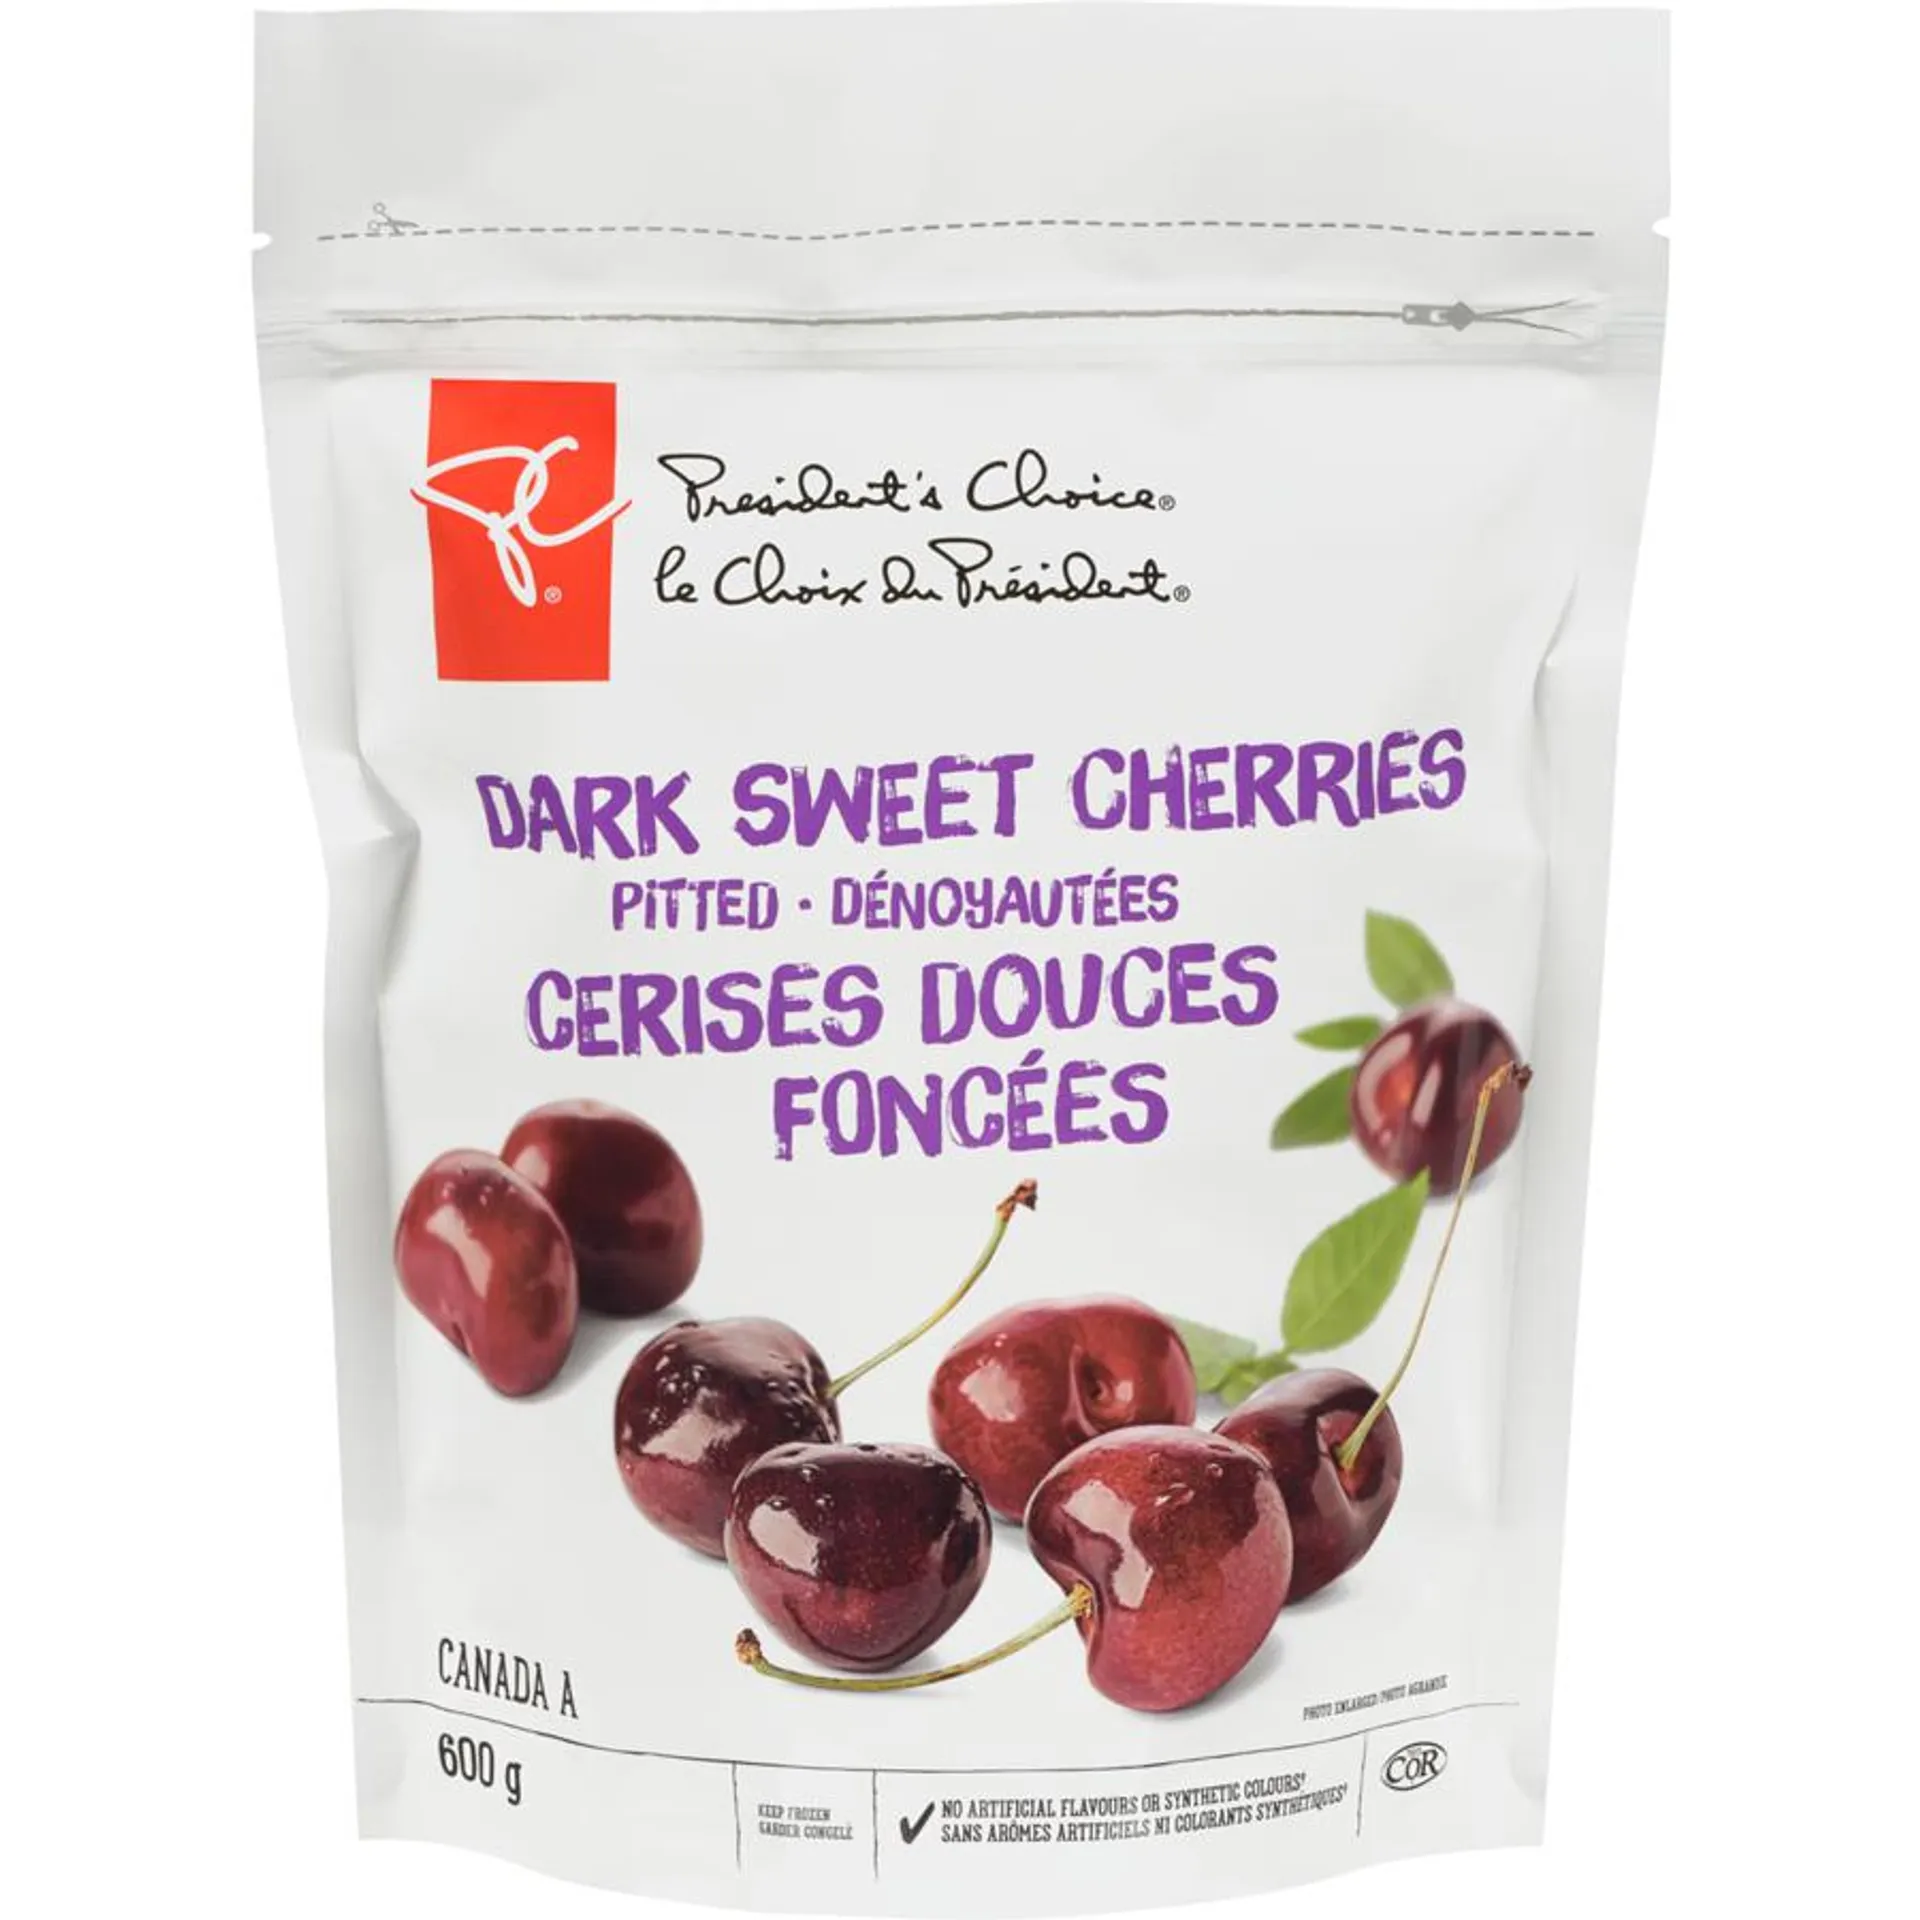 Pitted Dark Sweet Cherries